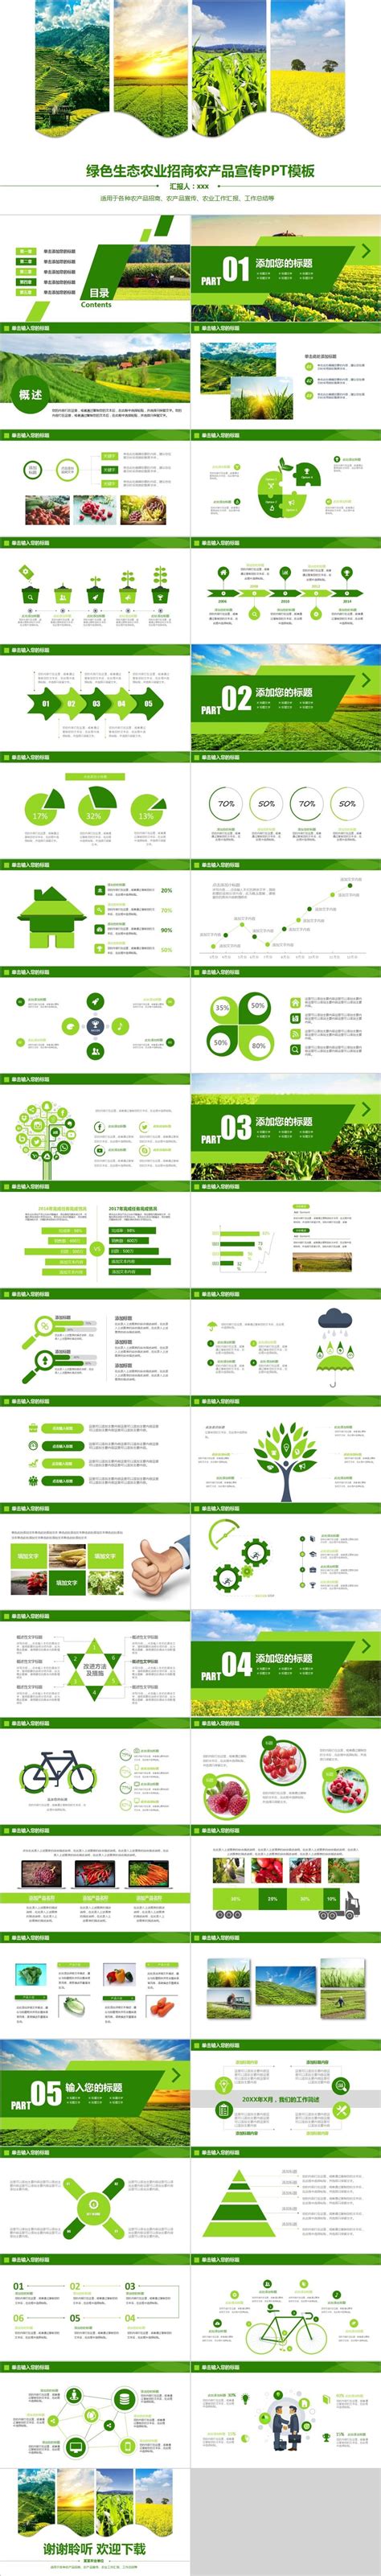 绿色生态农业招商农产品宣传PPT模板-PPT模板-图创网